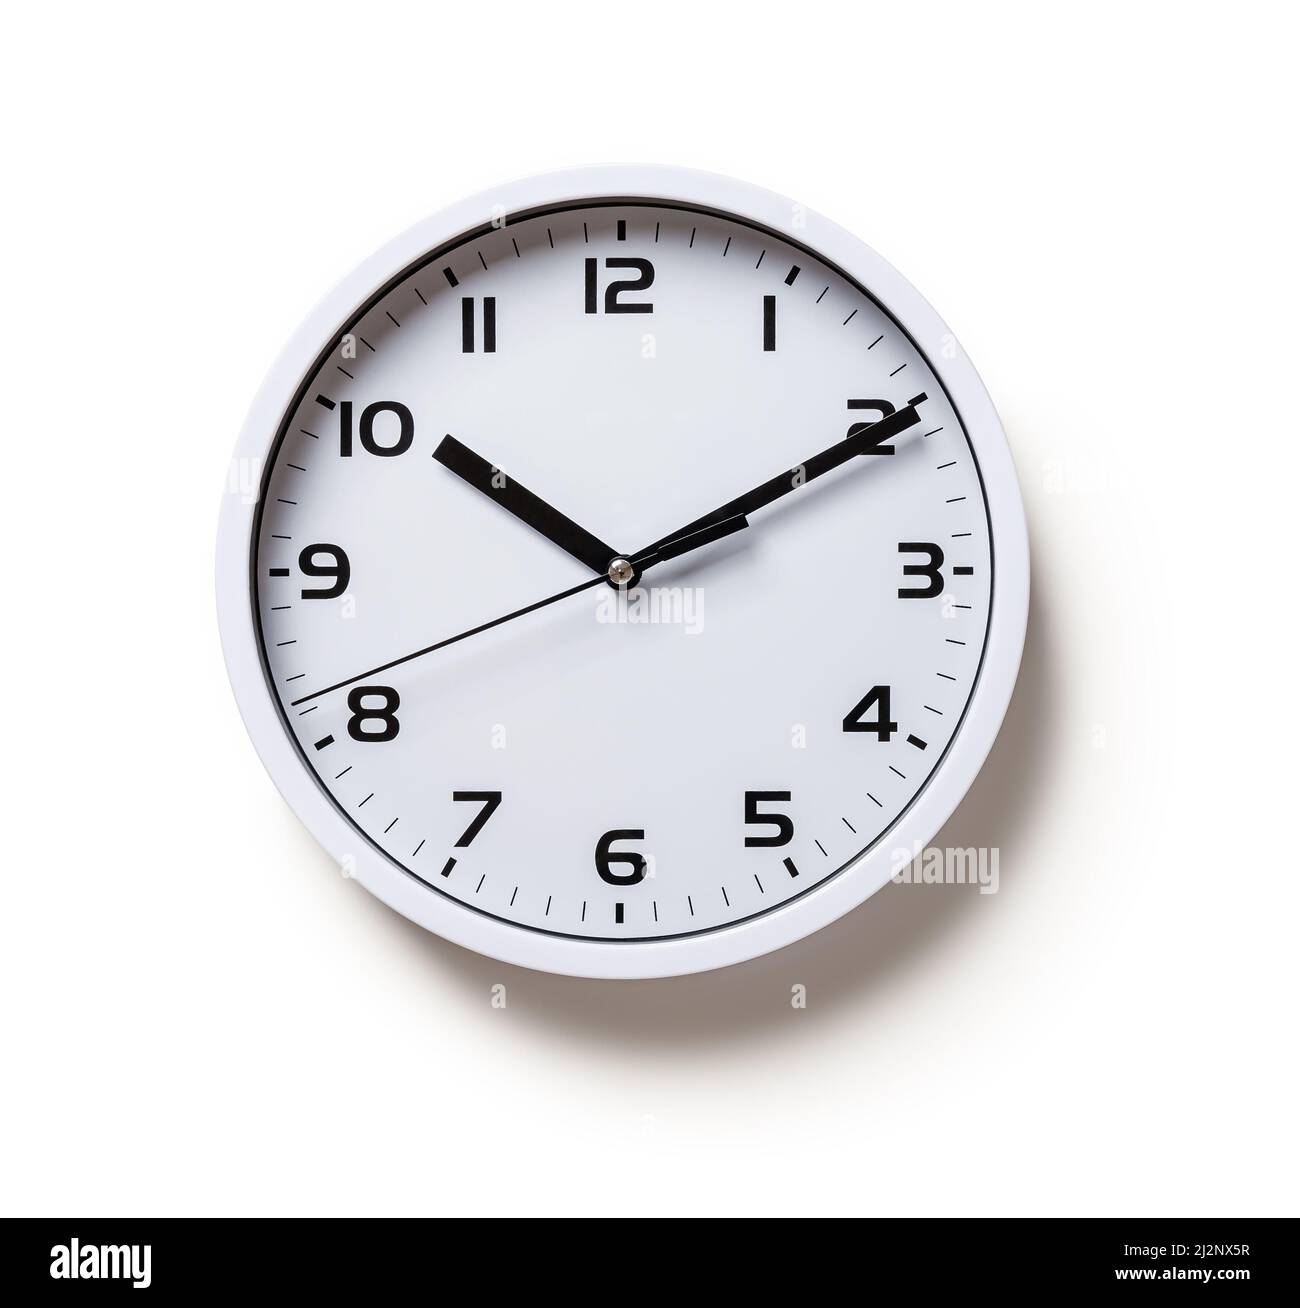 Wanduhr auf weißem Hintergrund isoliert. Runde weiße Uhr mit schwarzen Zeigern Ausschnitt. Zehn Minuten nach zehn. Zeitsteuerung, Zeitmesskonzept. Stockfoto